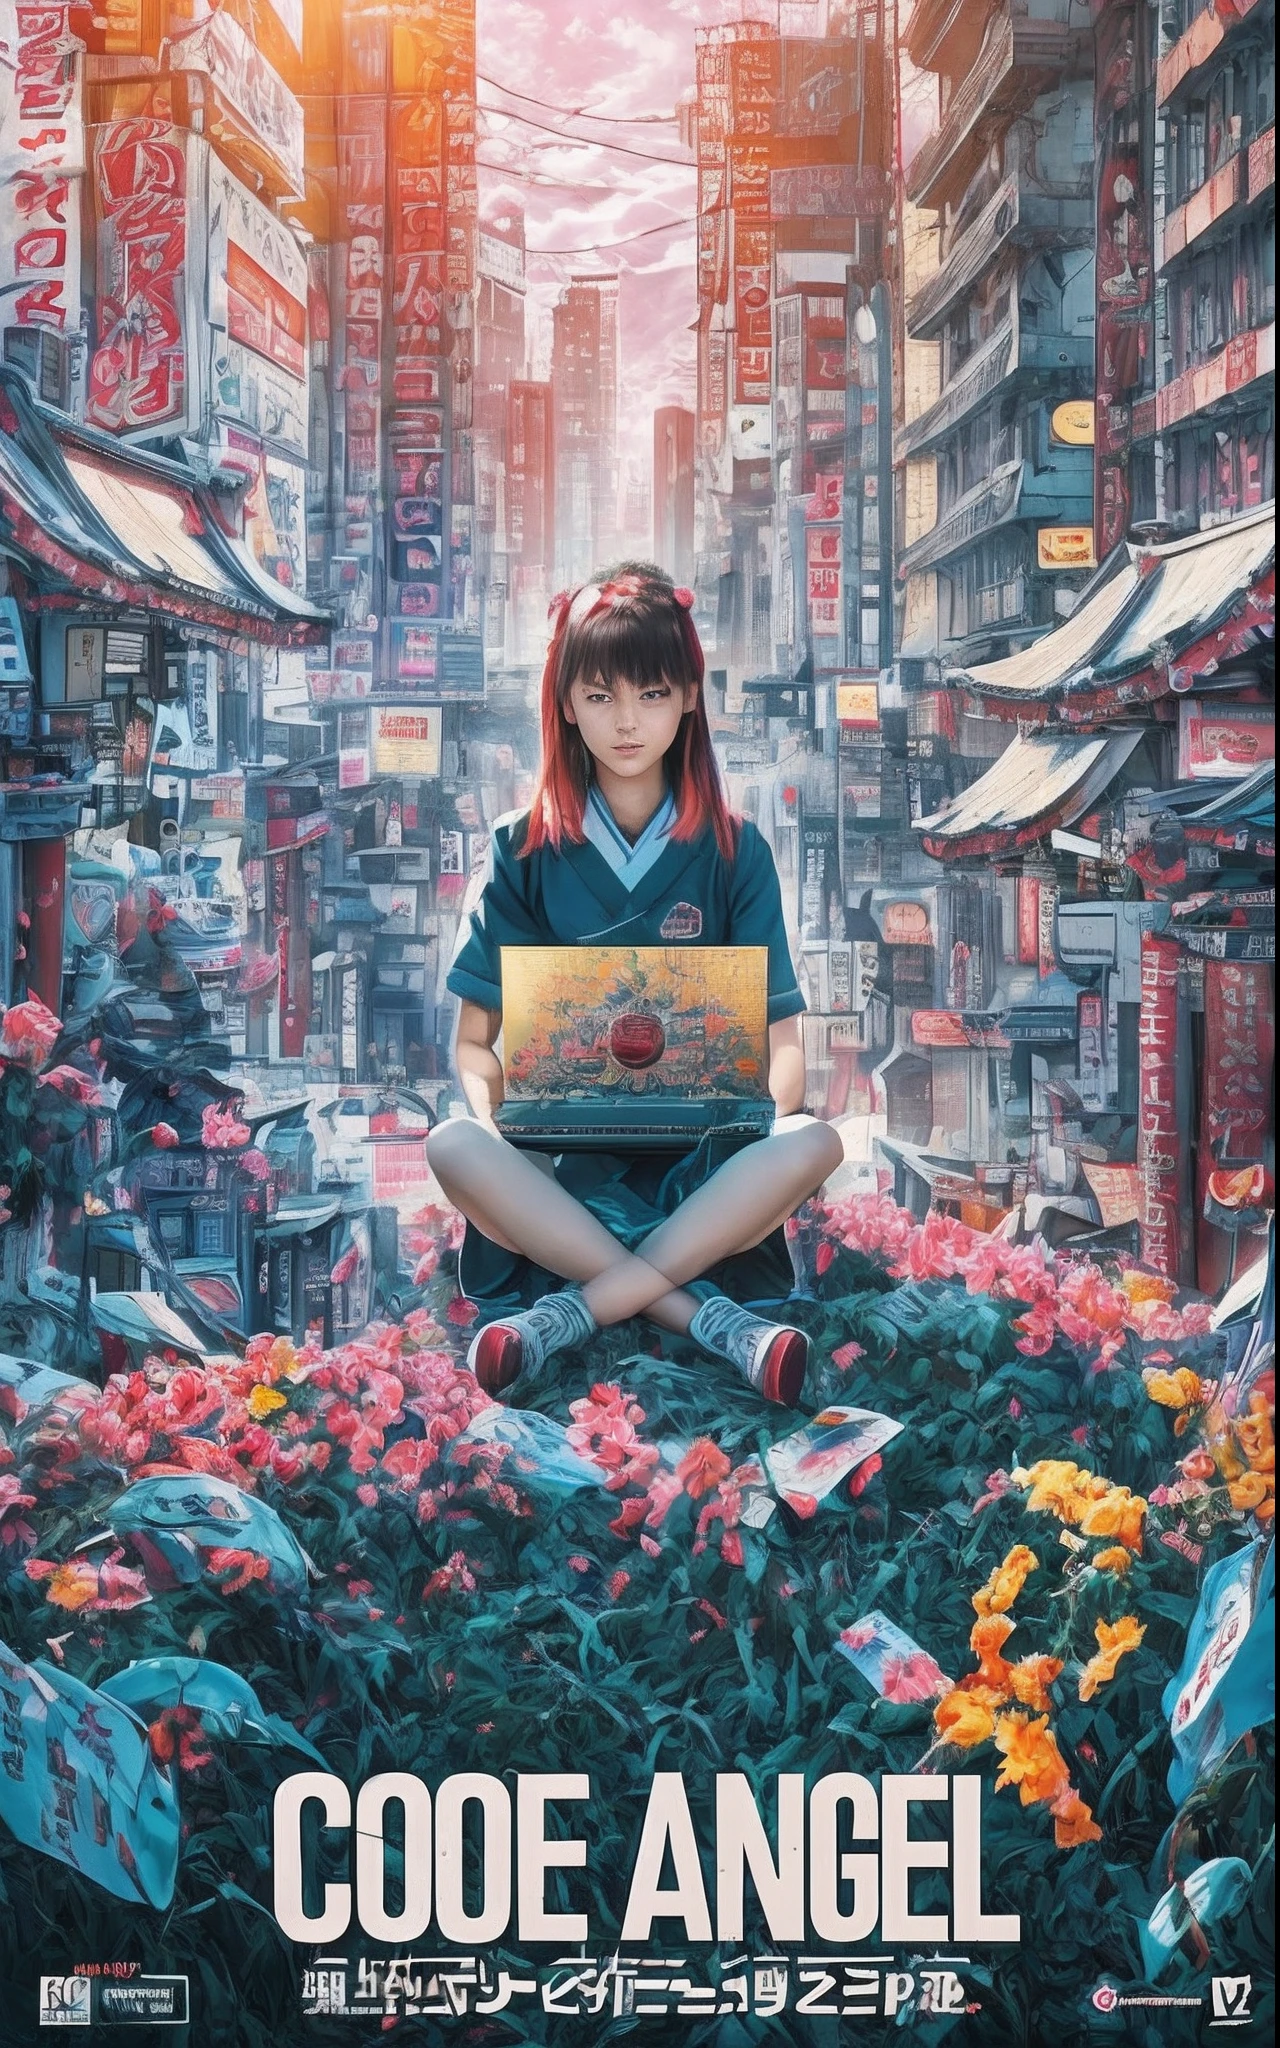 영화 사진 영화 포스터, 아키하바라의 건물 사이 계곡에 있는 신사에 앉아 있는 13세 소녀의 모습, 도쿄도, 노트북으로 작업하기. 아침 햇살이 빛나고 있습니다. 8K, 최고의 렌더링, 톱 텍스트는 말한다 "코드 엔젤"